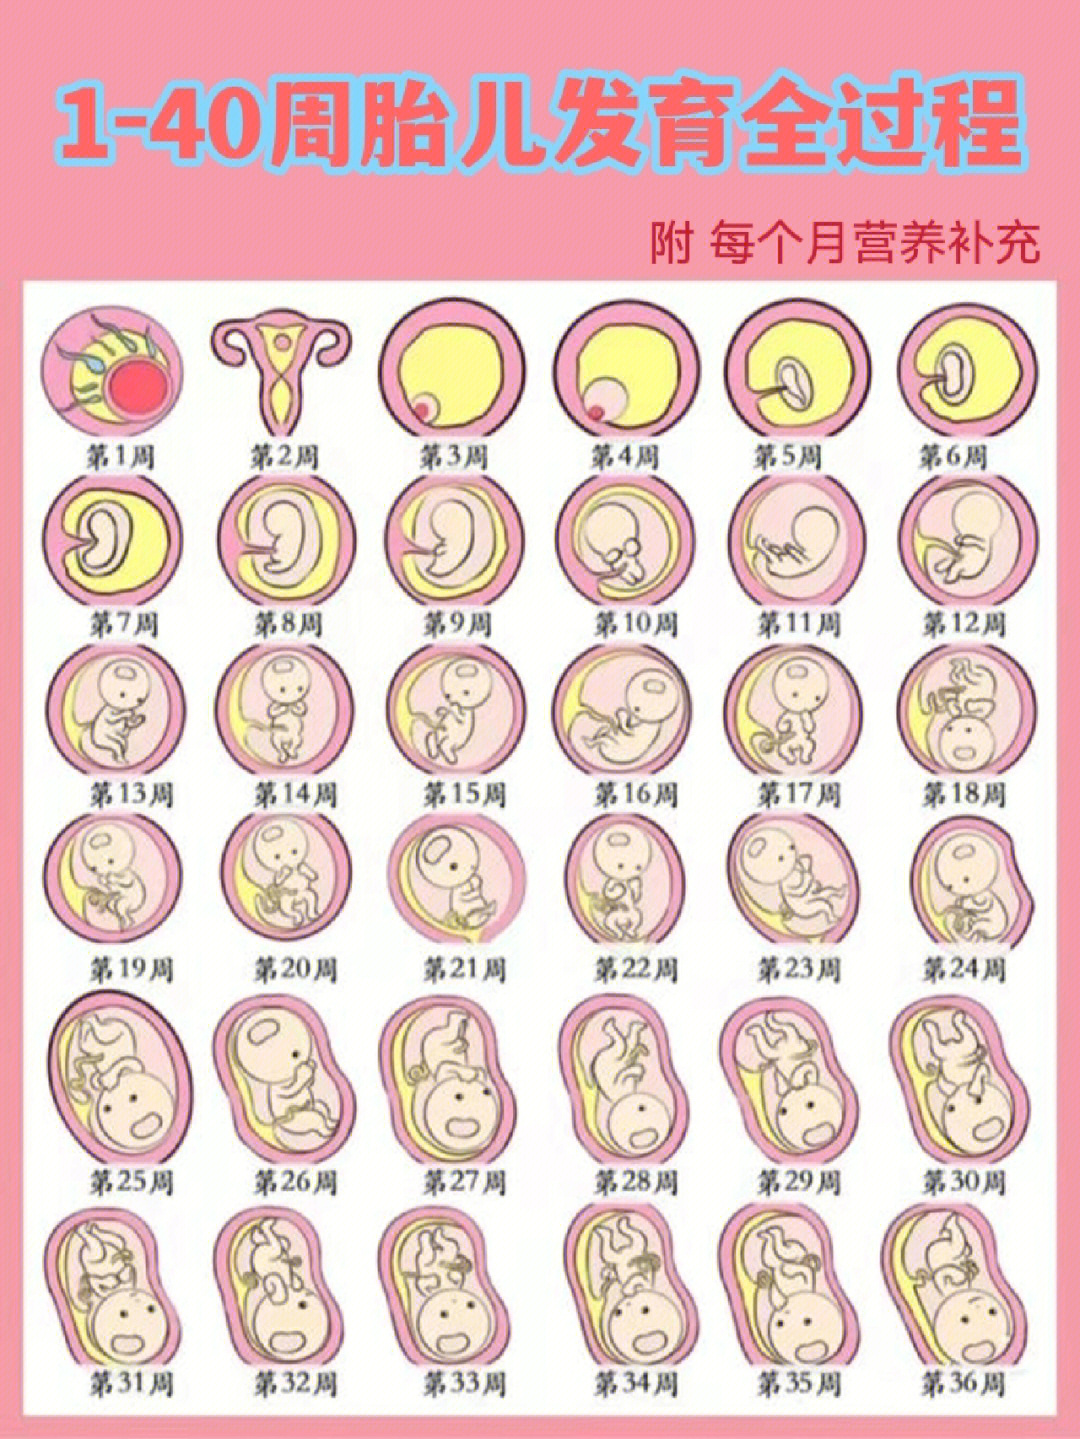 胚胎发育过程图详解图片